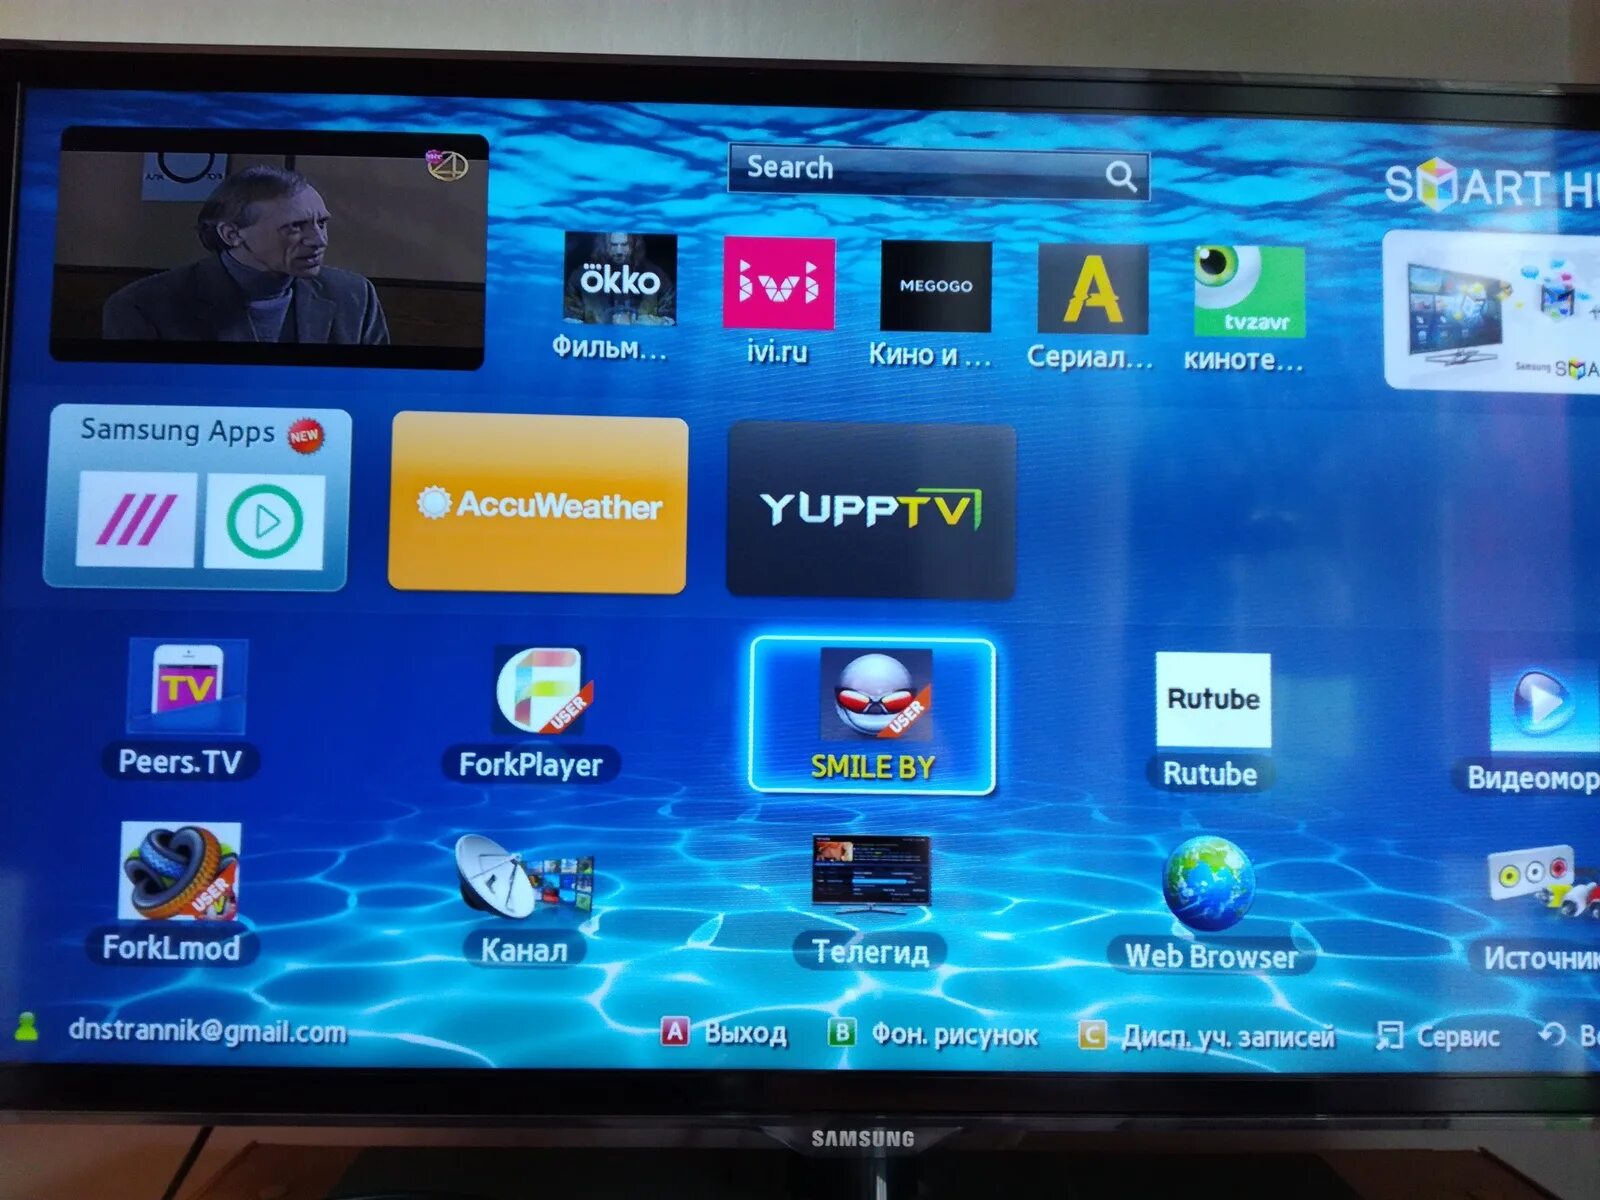 Телевизор Samsung смарт ТВ каналы. Samsung apps для Smart TV. Телевизор самсунг не смарт ТВ. ТВ приставка самсунг смарт ТВ. Работа телевизора самсунг